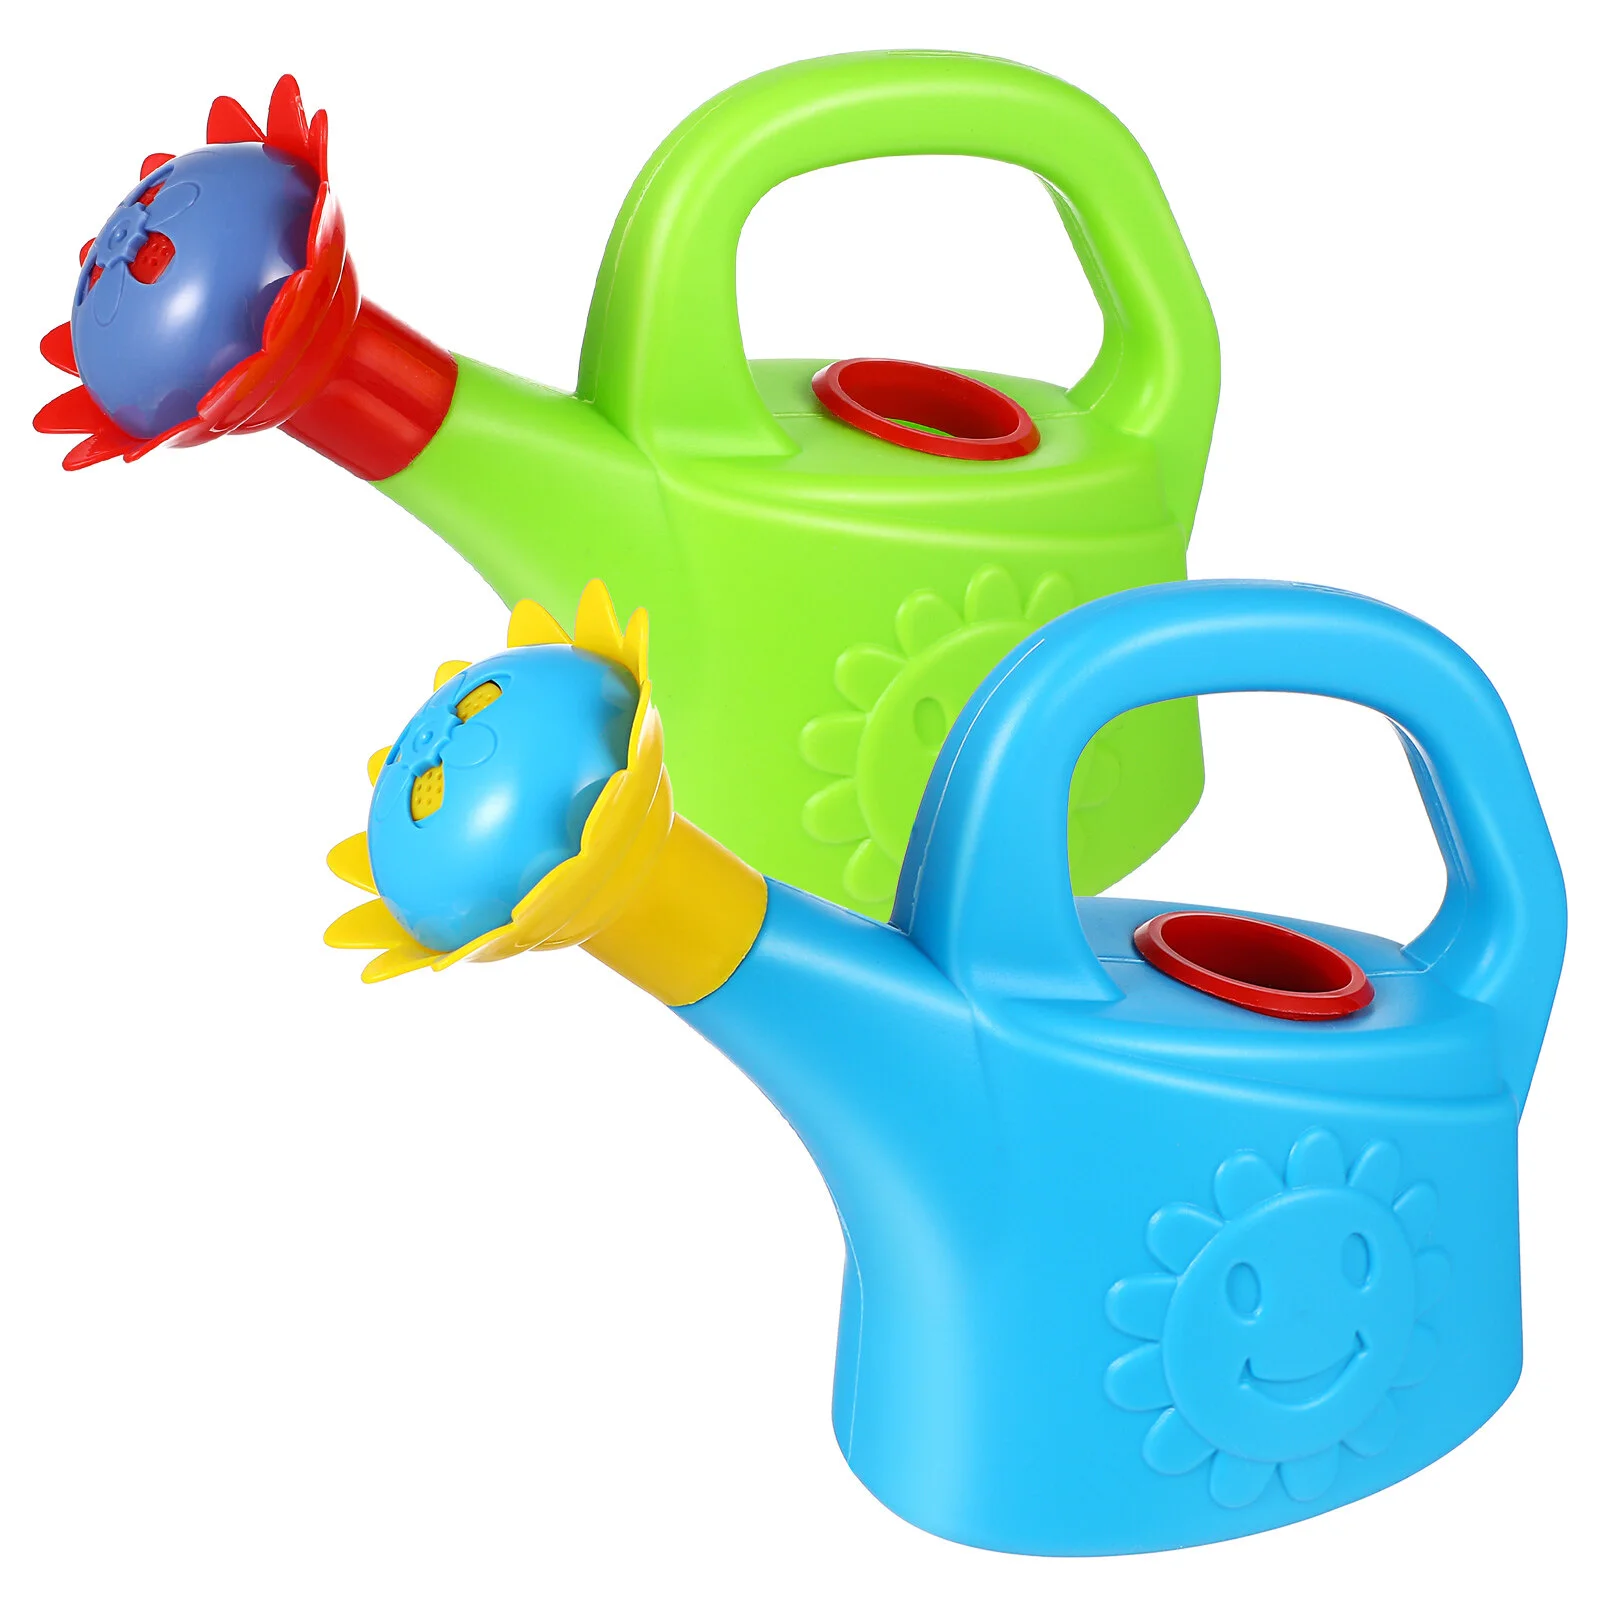 

Игрушки для полива 2 шт., Интересные детские игрушки для ванной, Детские садовые инструменты, пляжные игрушки, детские канистры для полива, ранние